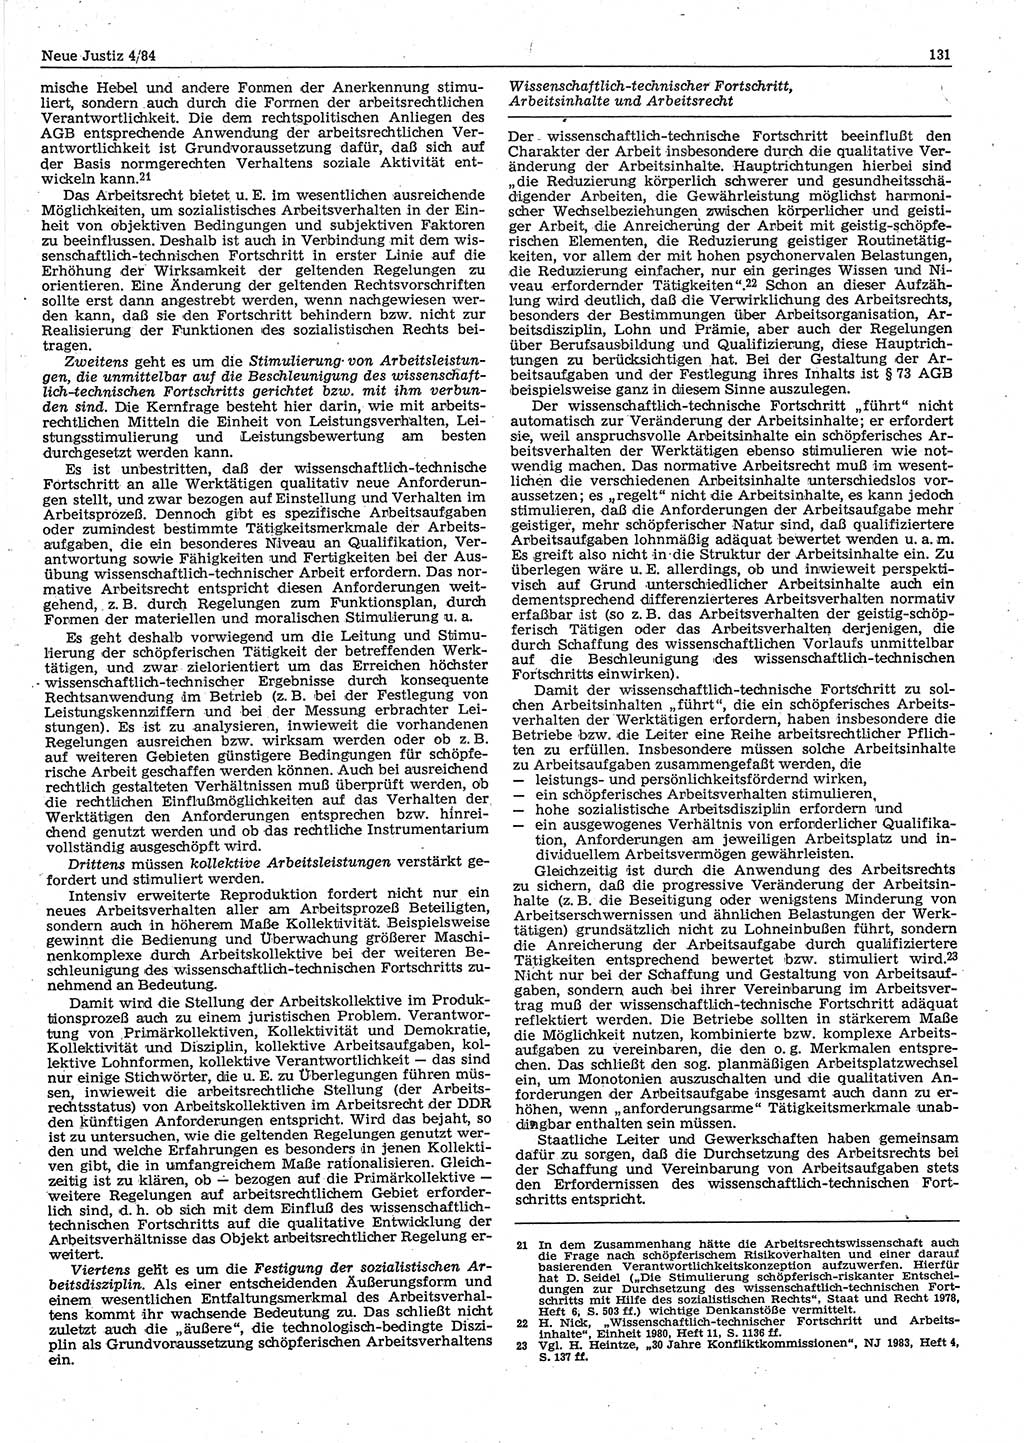 Neue Justiz (NJ), Zeitschrift für sozialistisches Recht und Gesetzlichkeit [Deutsche Demokratische Republik (DDR)], 38. Jahrgang 1984, Seite 131 (NJ DDR 1984, S. 131)